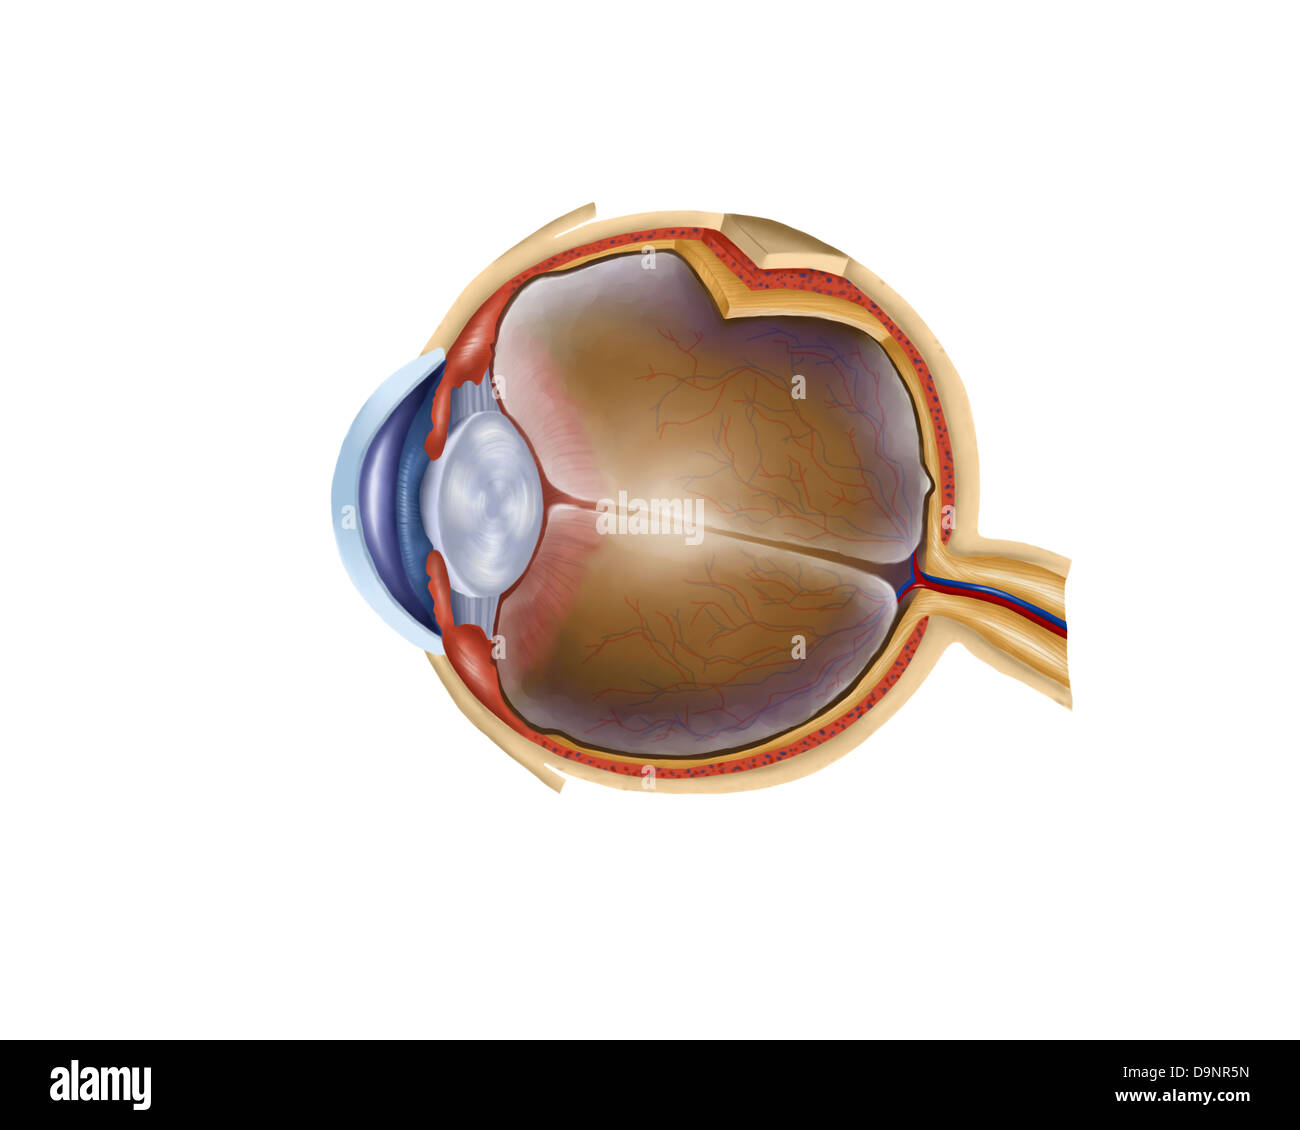 Anatomy of human eye. Stock Photo